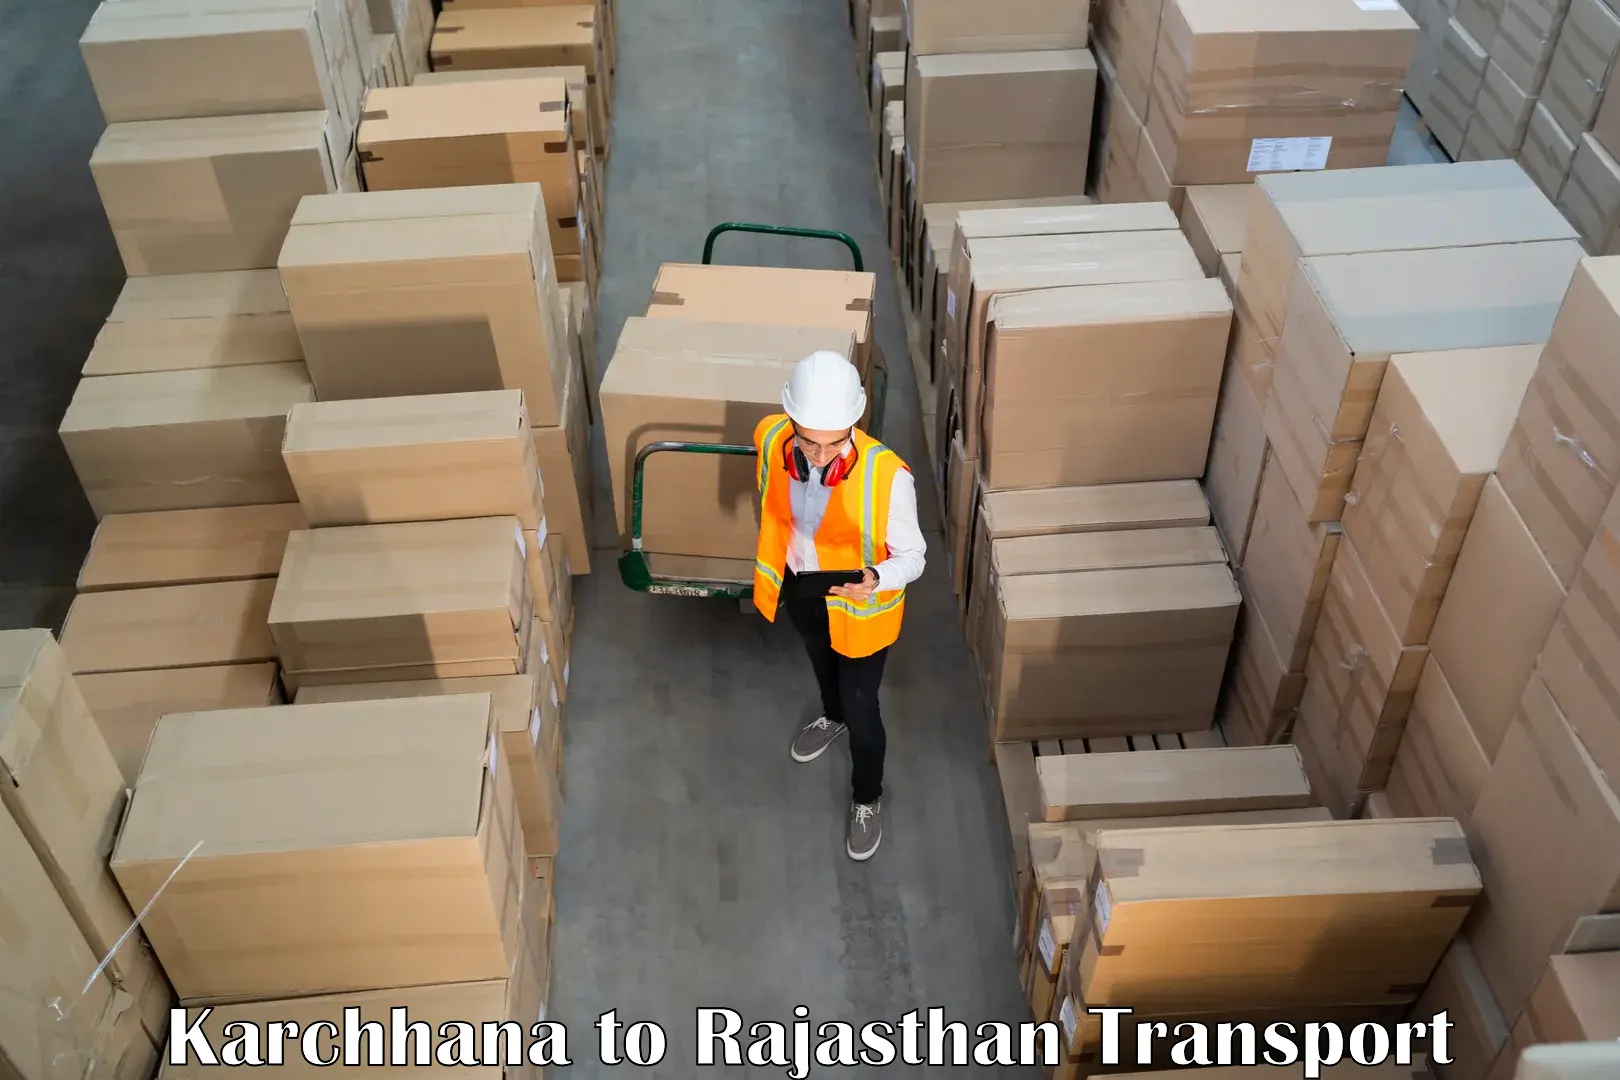 Shipping partner Karchhana to Sirohi